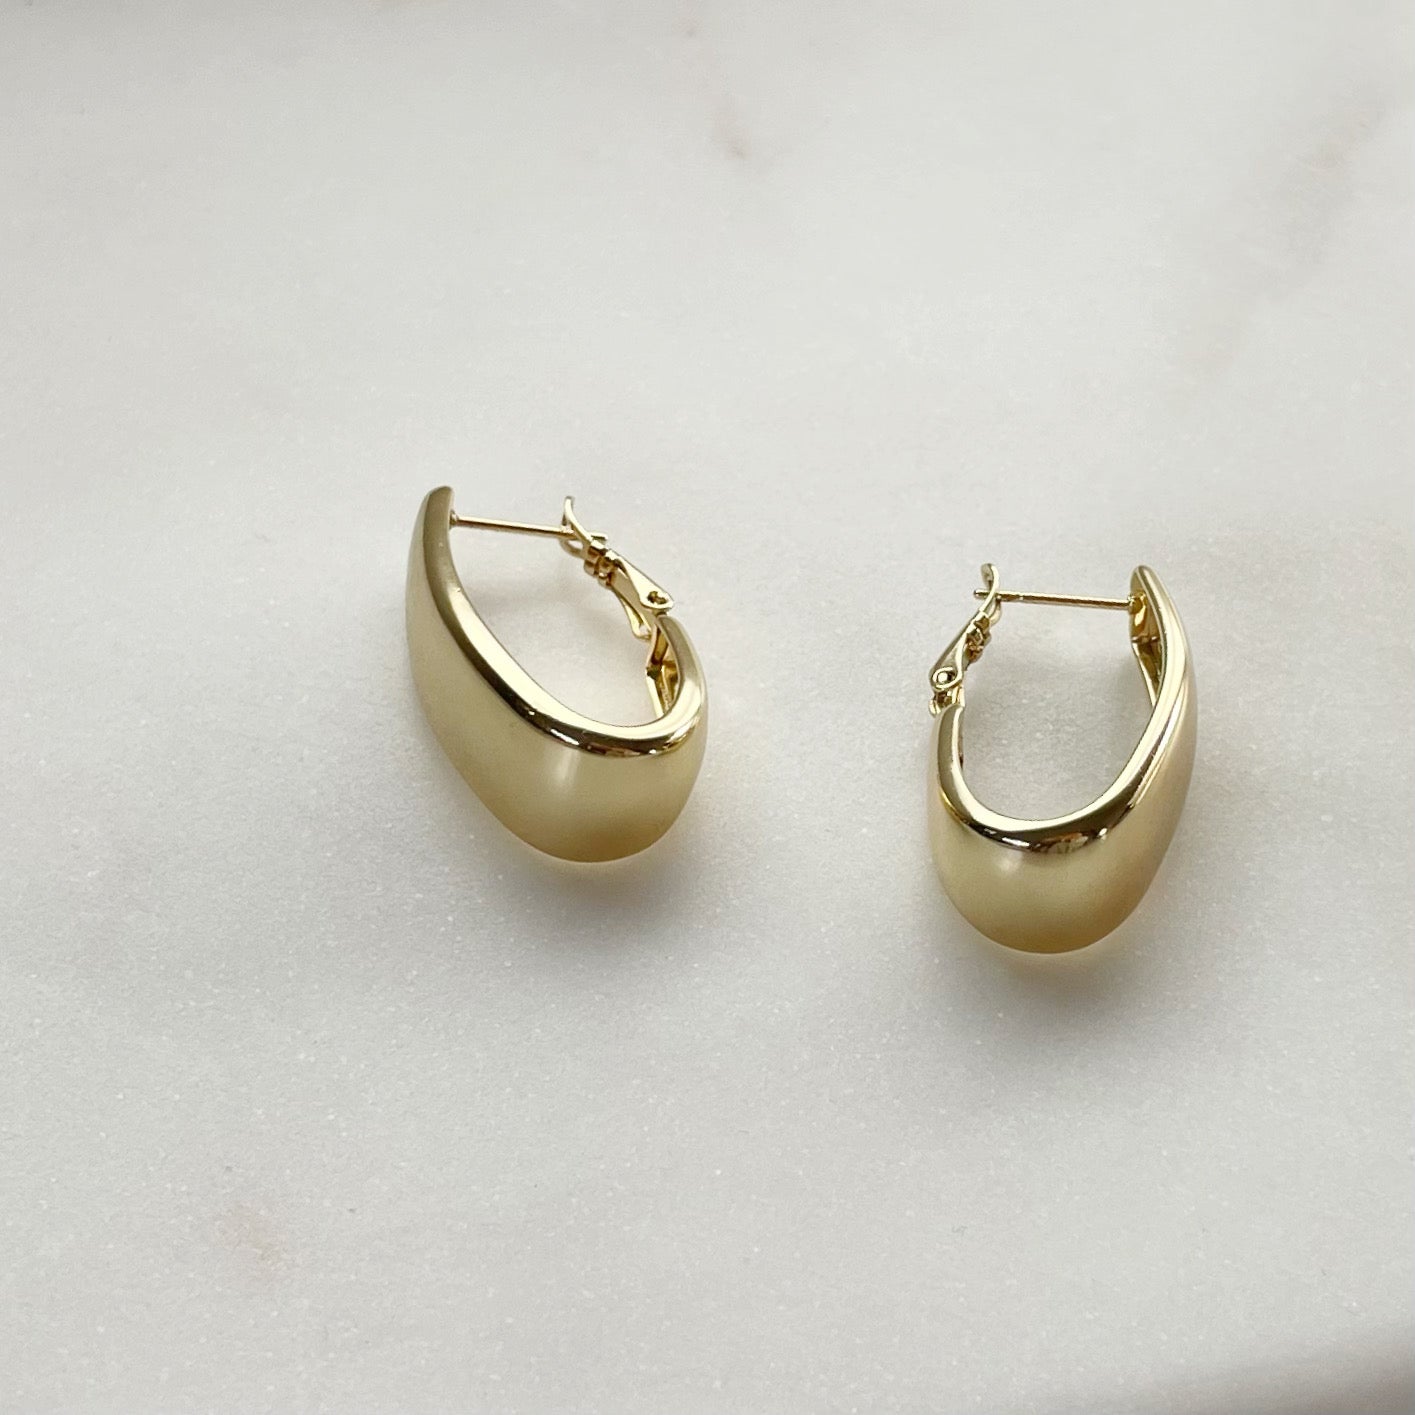 Flawless Hoop Earrings - Smooth Gold Filled Hoops